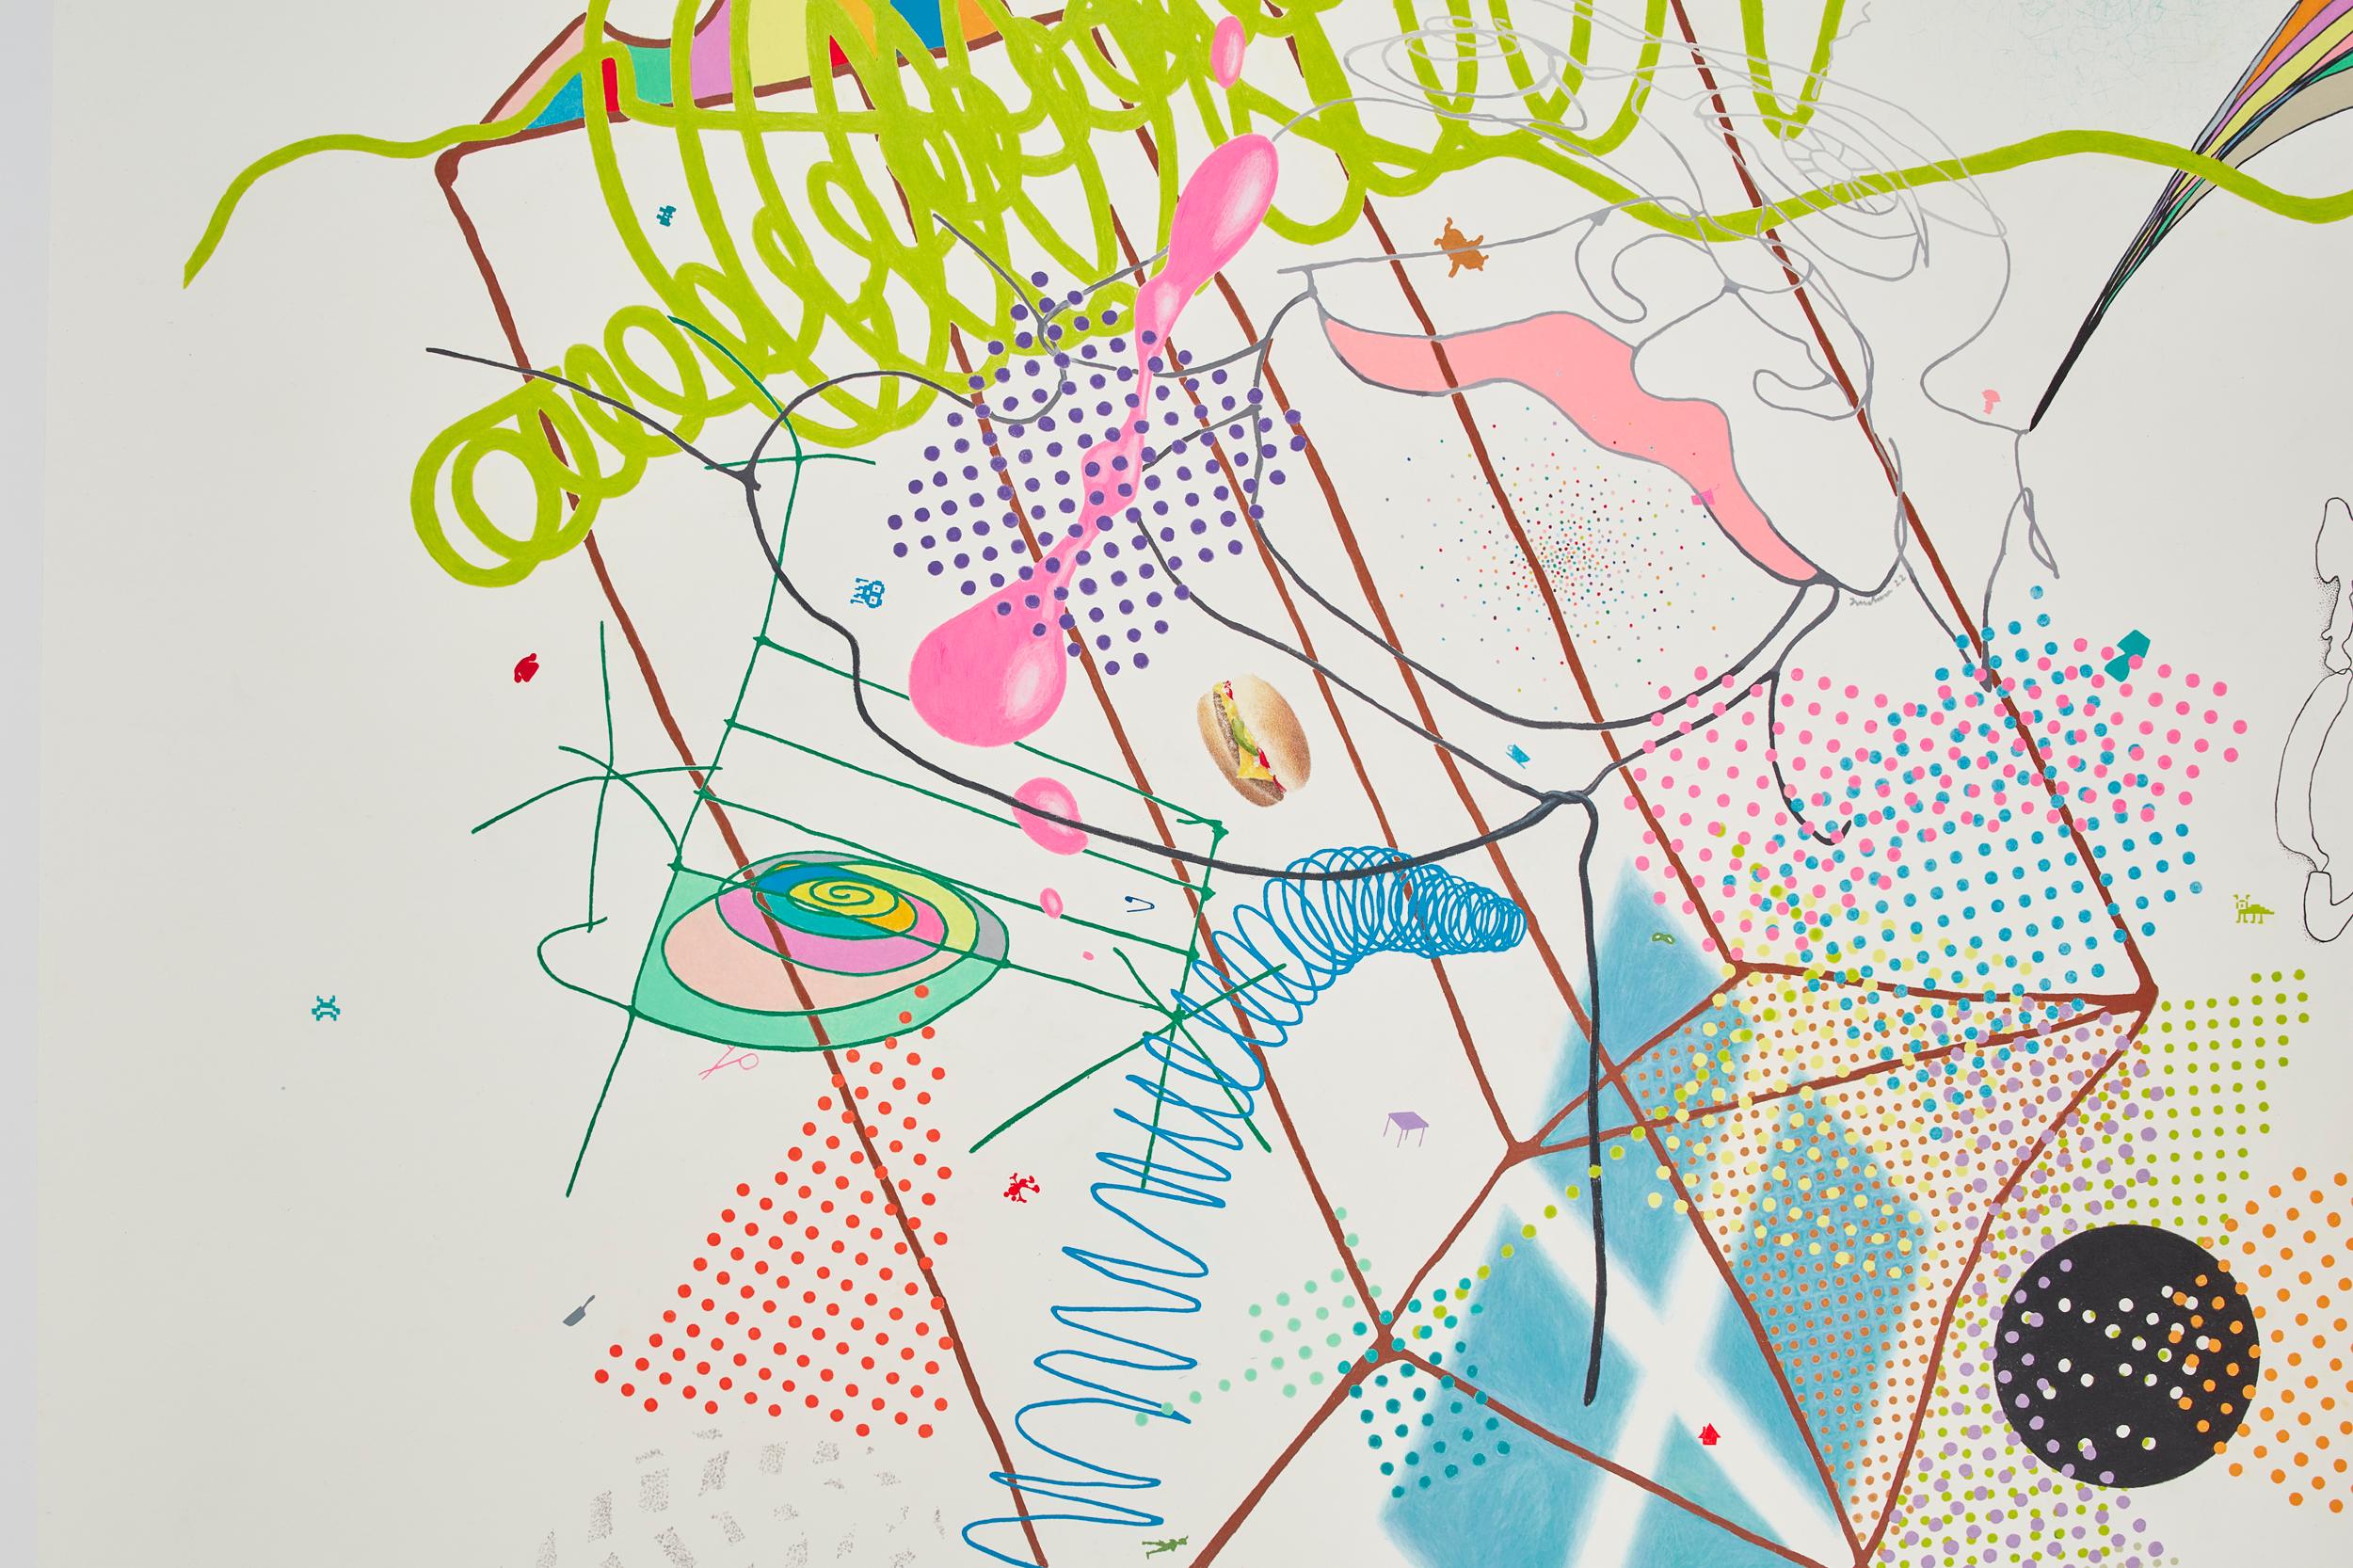 Tom Friedmans jüngste Arbeiten auf Papier markieren eine neue Richtung in seiner Praxis, die sich an seine berühmten hängenden Wandinstallationen mit gemischten Medien anschließt, die oft eine Vielzahl von skulpturalen, alltäglichen Objekten